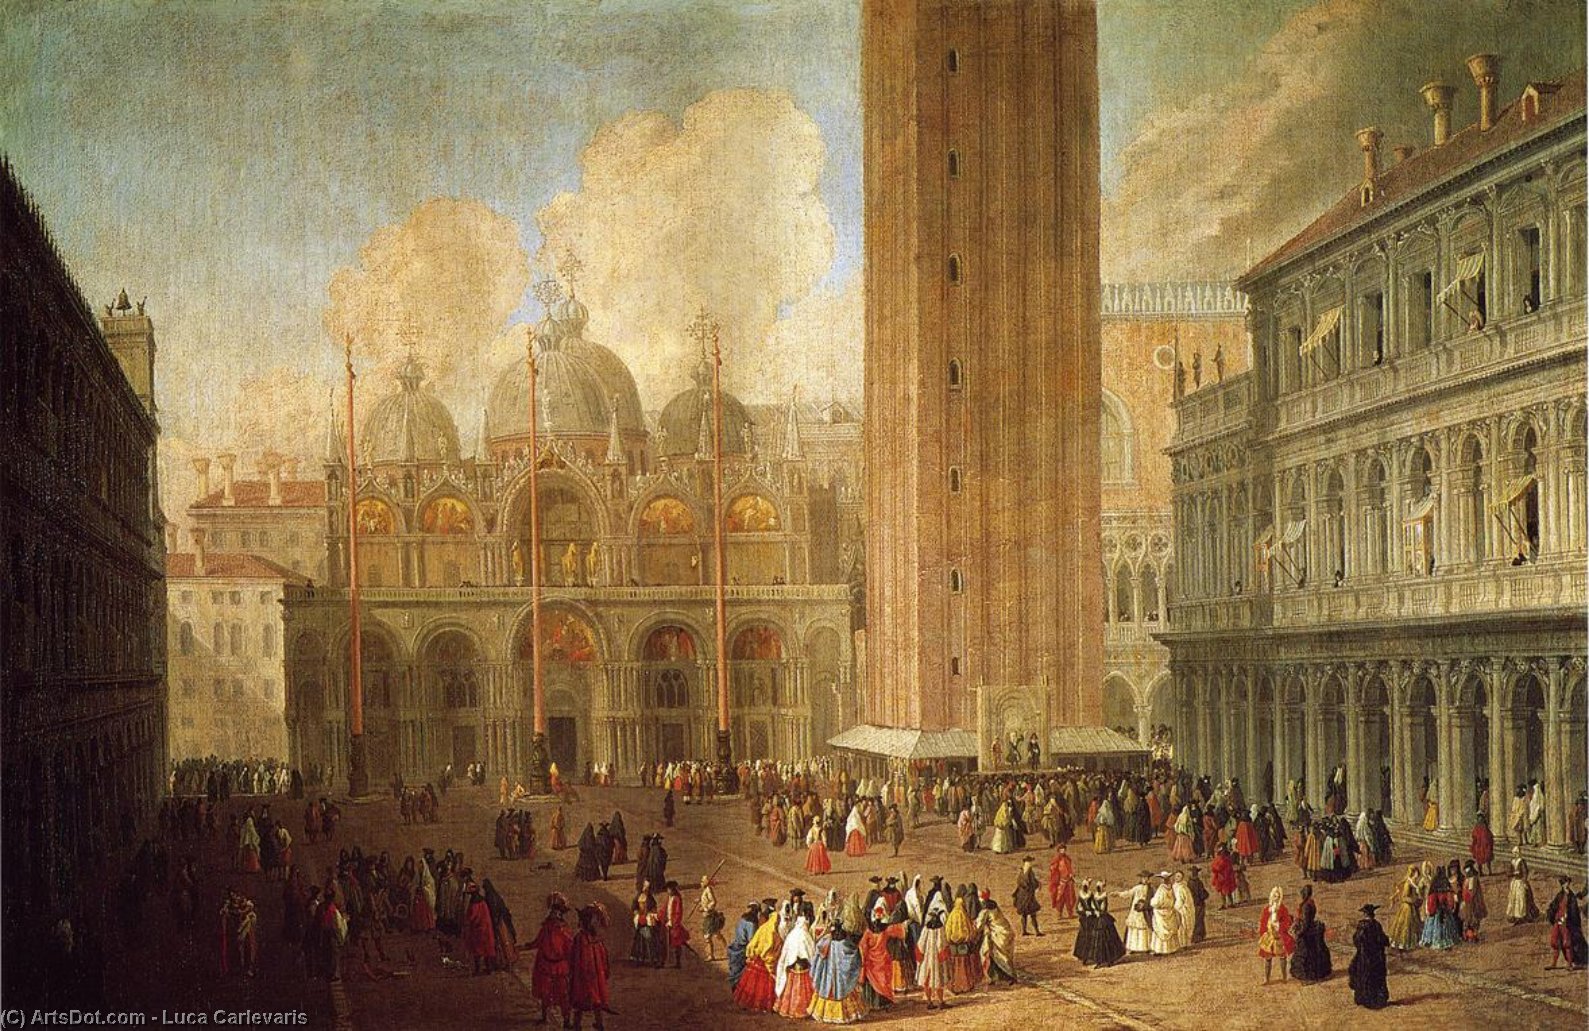 WikiOO.org - Encyclopedia of Fine Arts - Lukisan, Artwork Luca Carlevaris - Piazza San Marco, Looking East